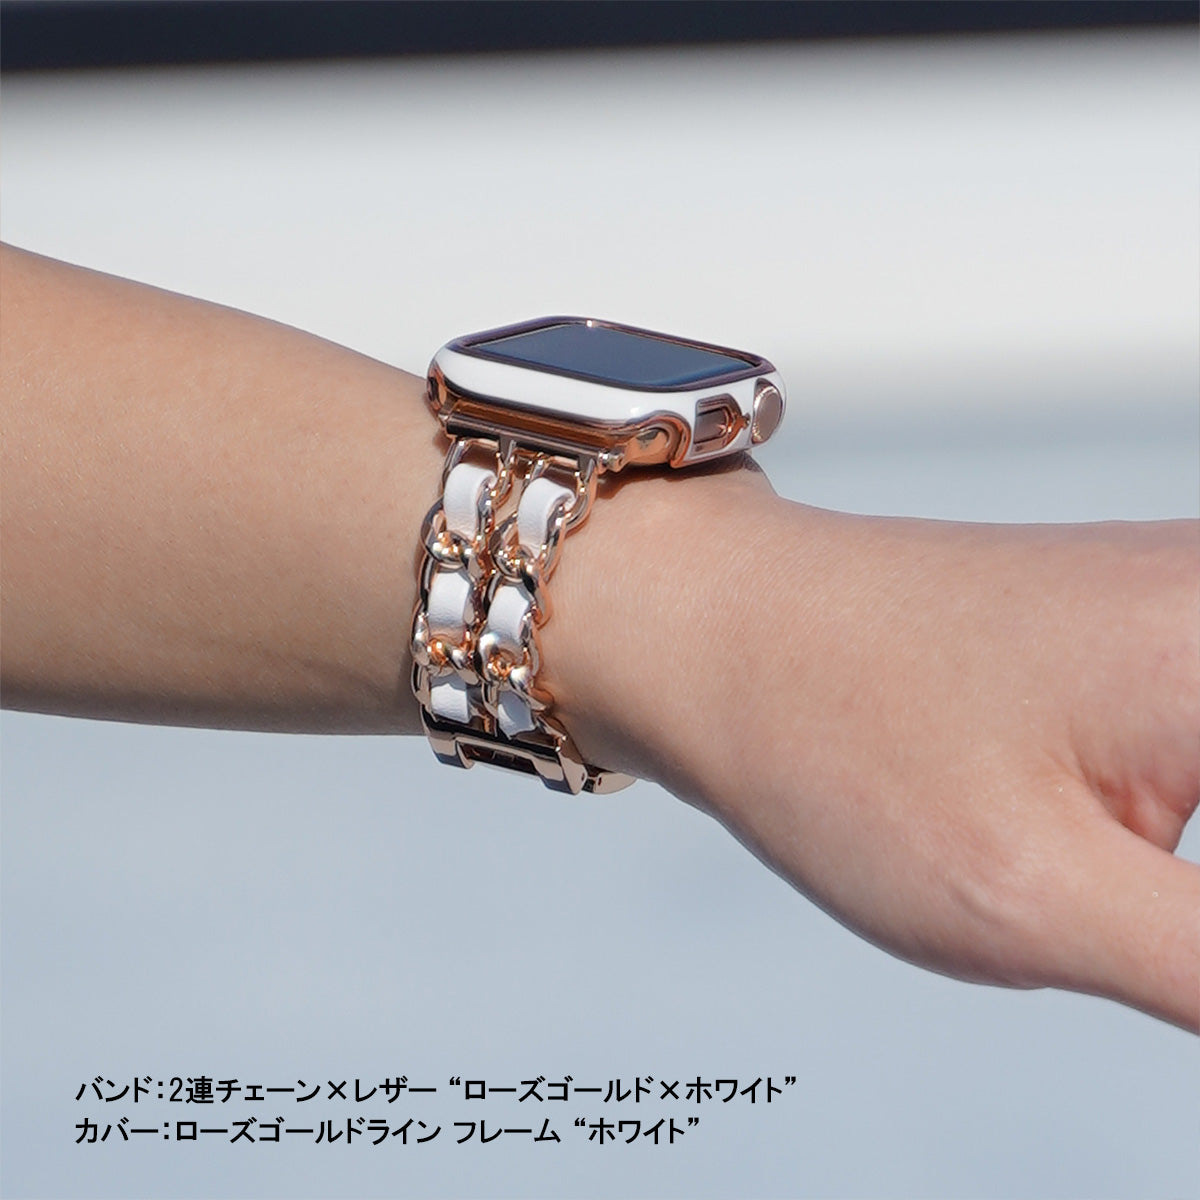 Apple Watch チェーンバンド シルバー レザーホワイト 41mm